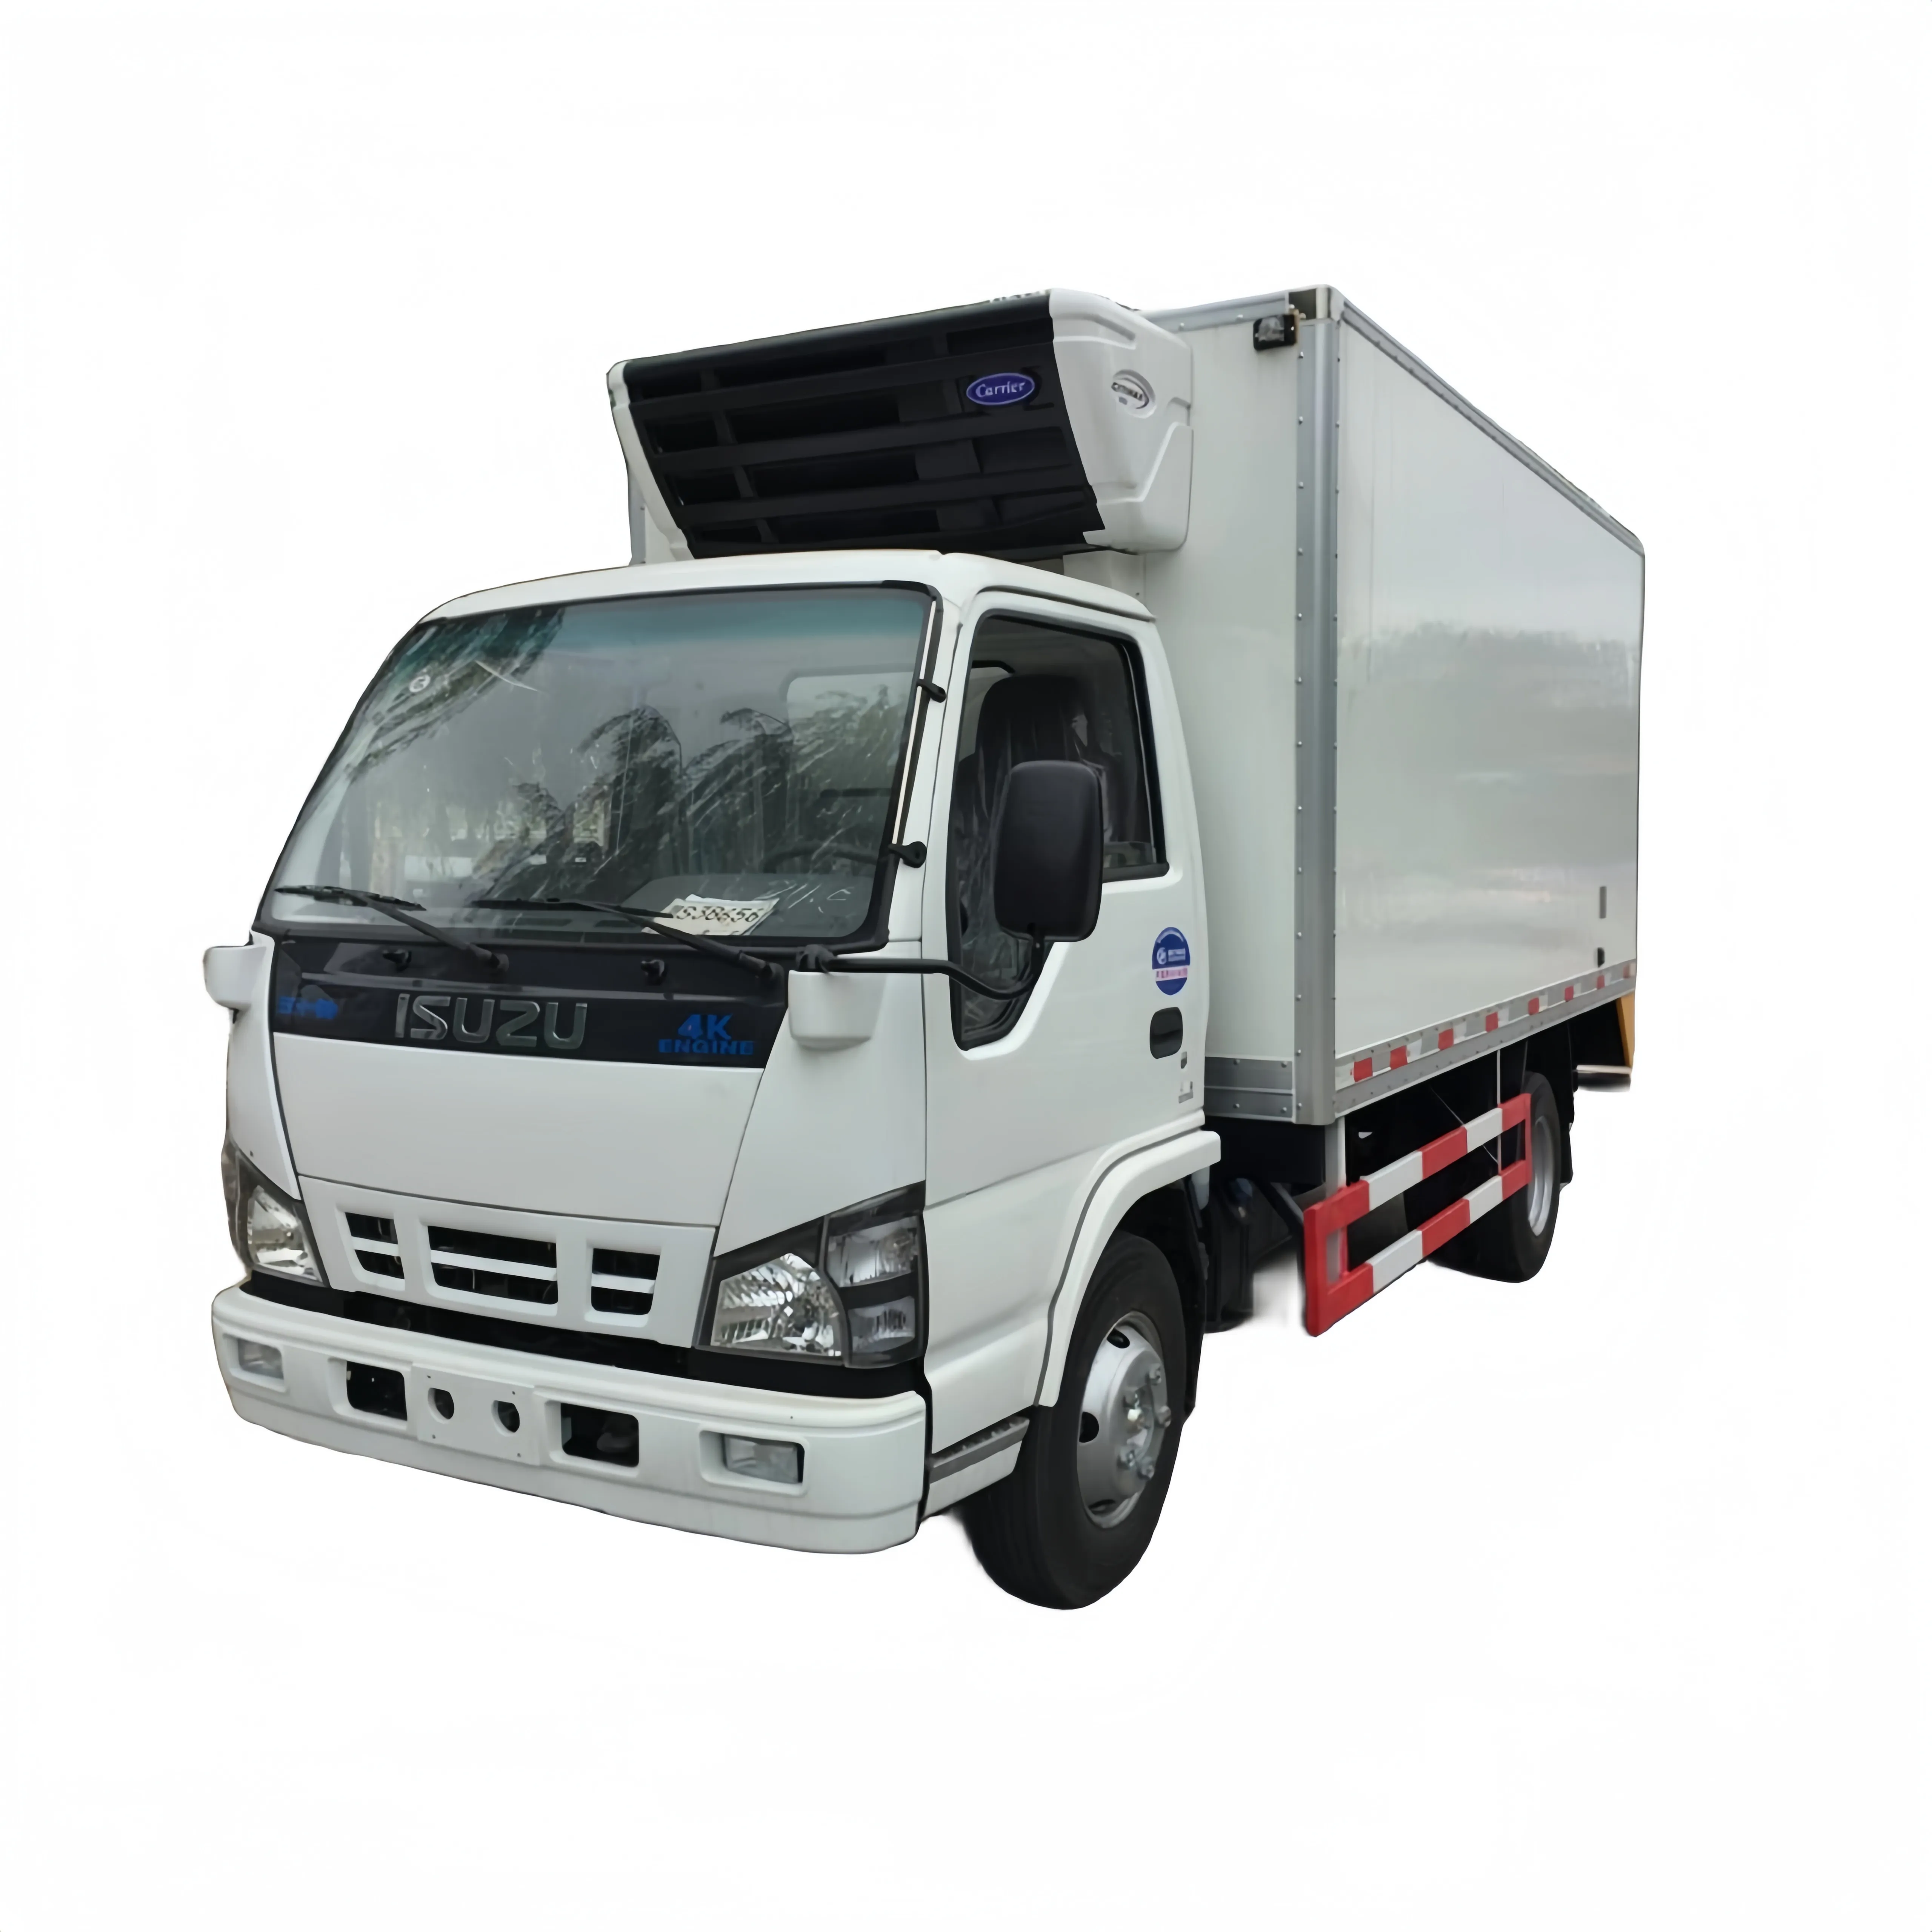 شاحنة مستعملة ISUZU 600p هيكل + جديدة 5T فريزر بسعر رخيص